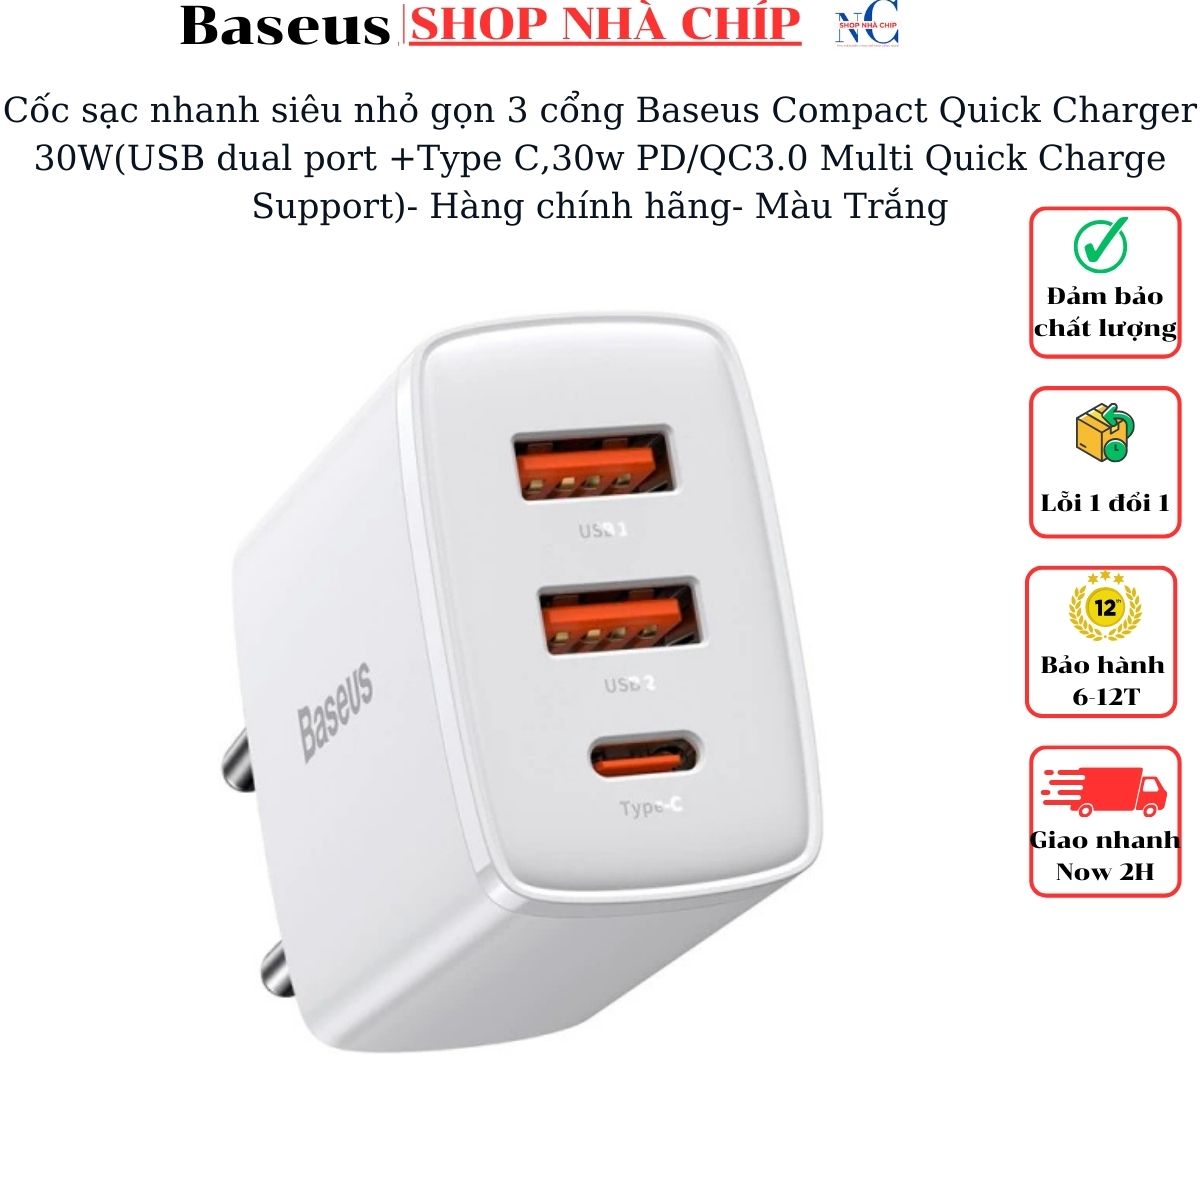 Hình ảnh Cốc sạc nhanh siêu nhỏ gọn Baseus Compact Quick Charger 30W(USB dual port +Type C,30w PD/QC3.0 Multi Quick Charge Support)- Hàng chính hãng